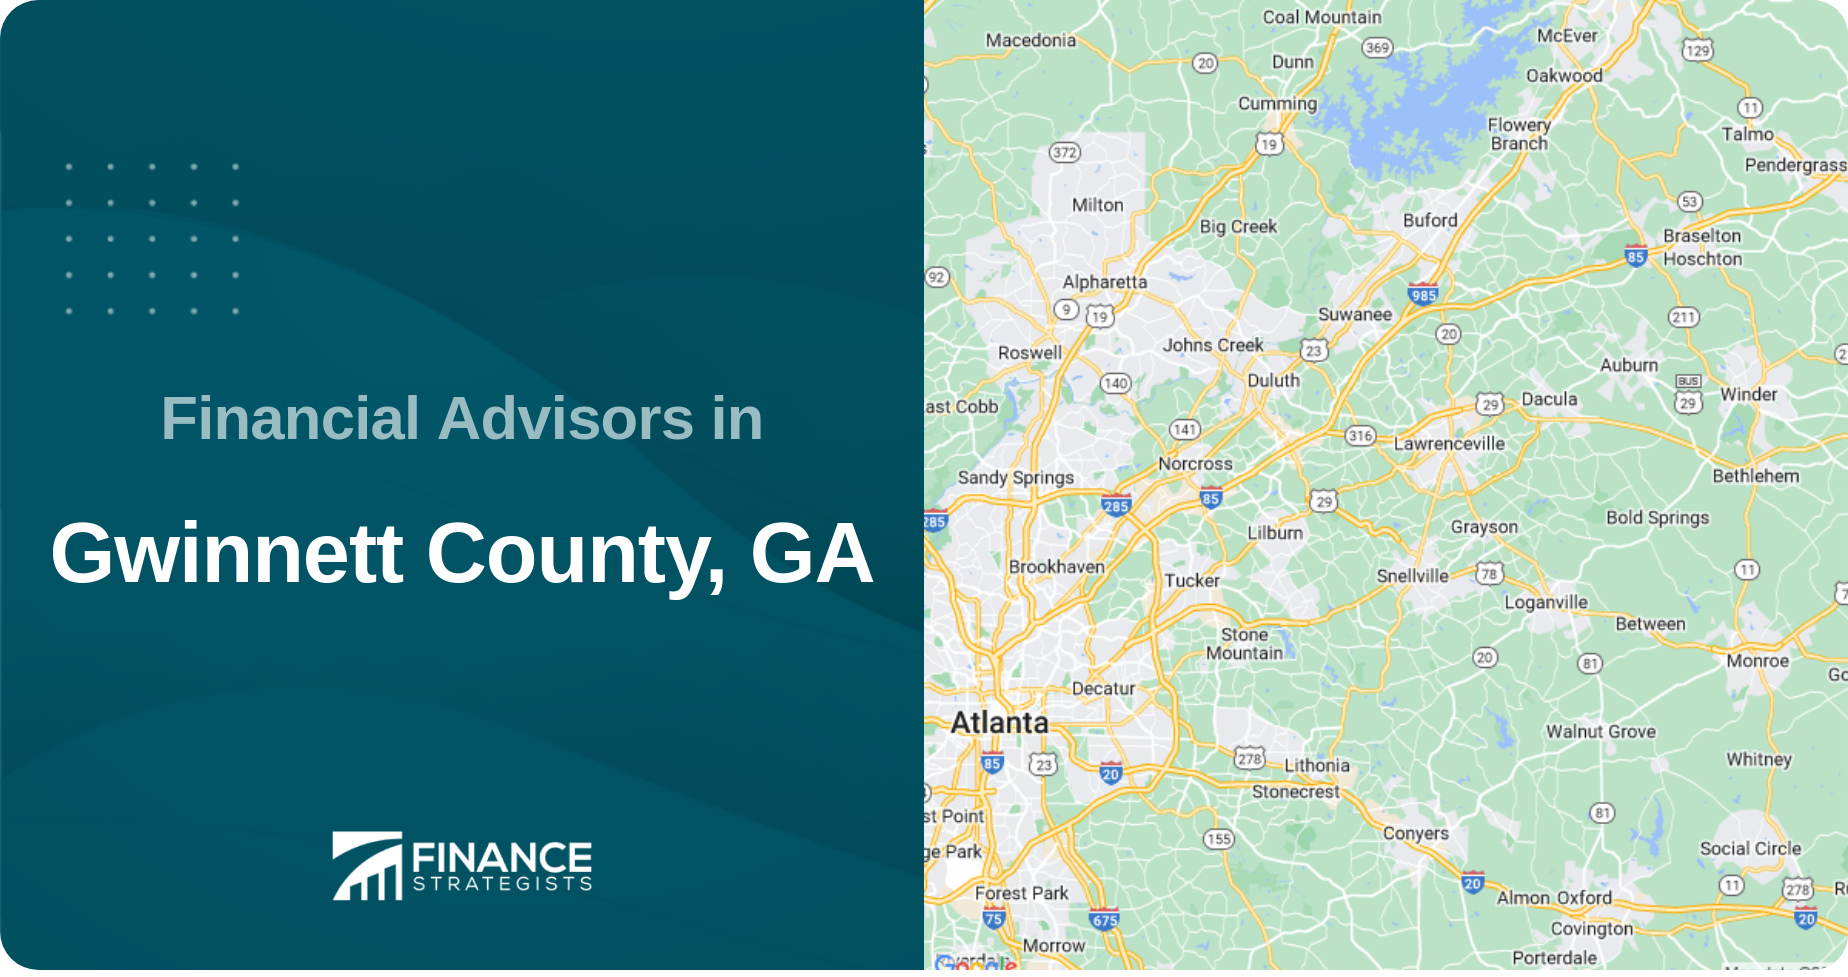 Financial Advisors in Gwinnett County, GA